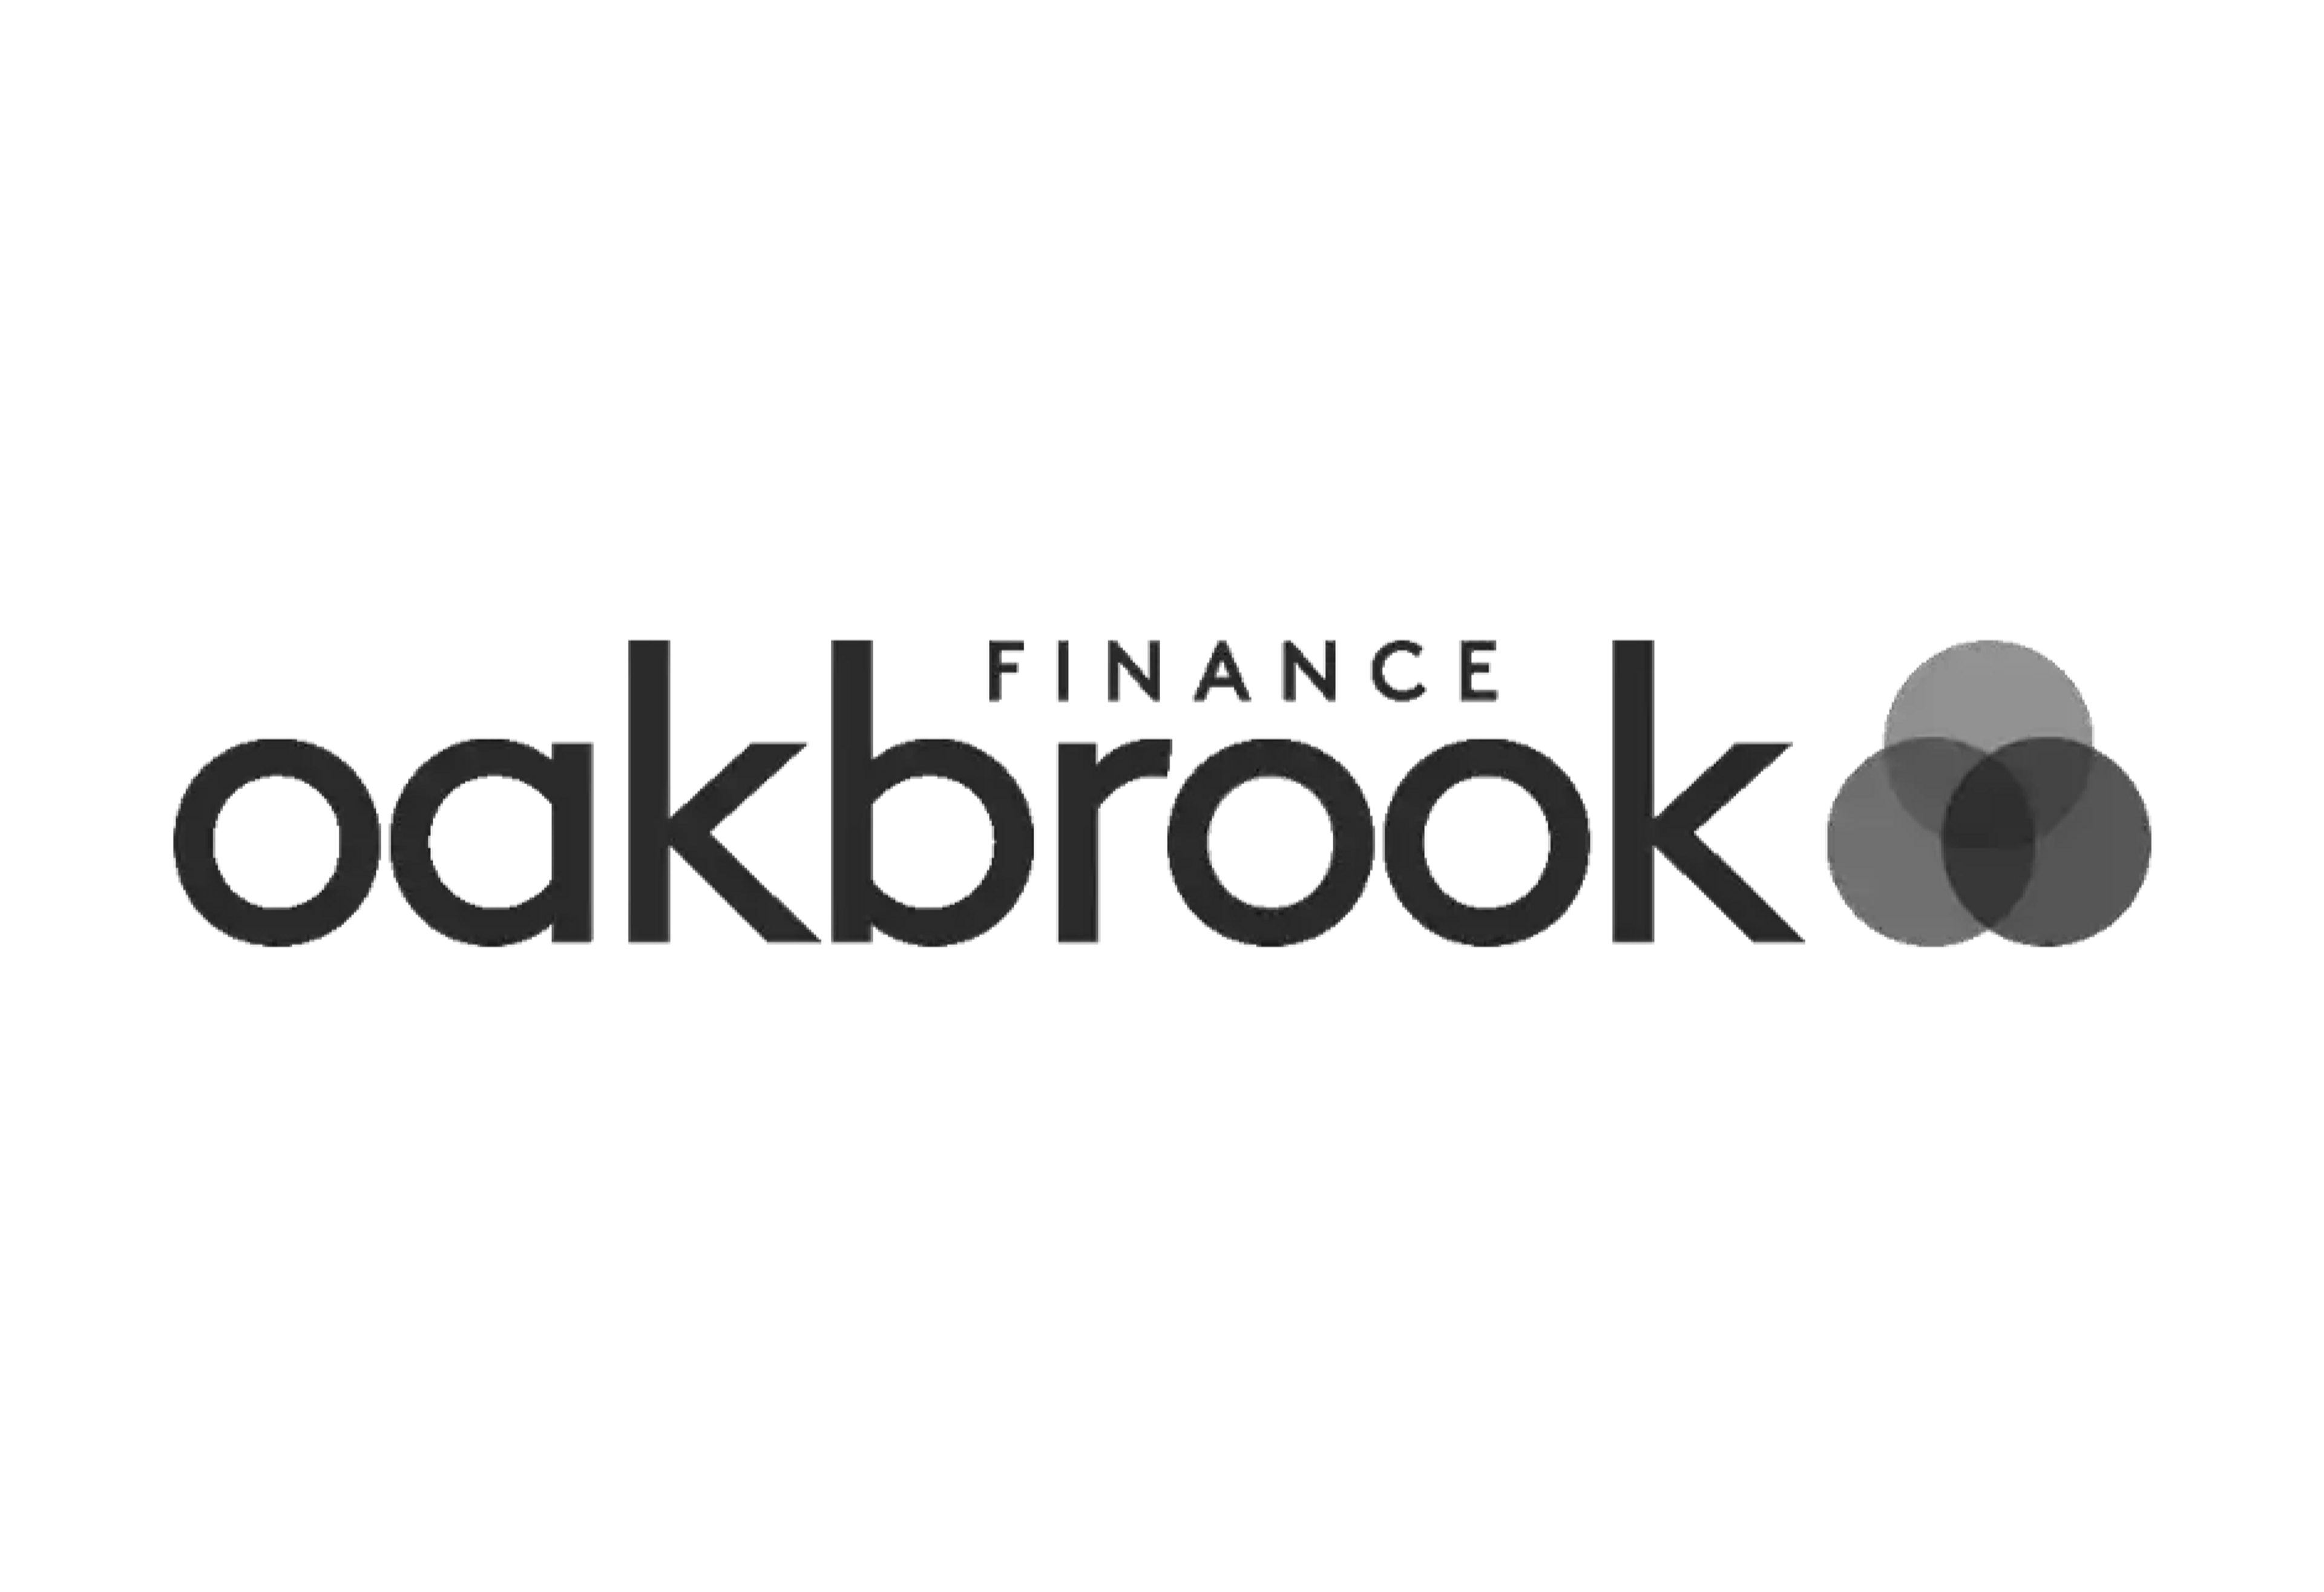 Oakbrook finance